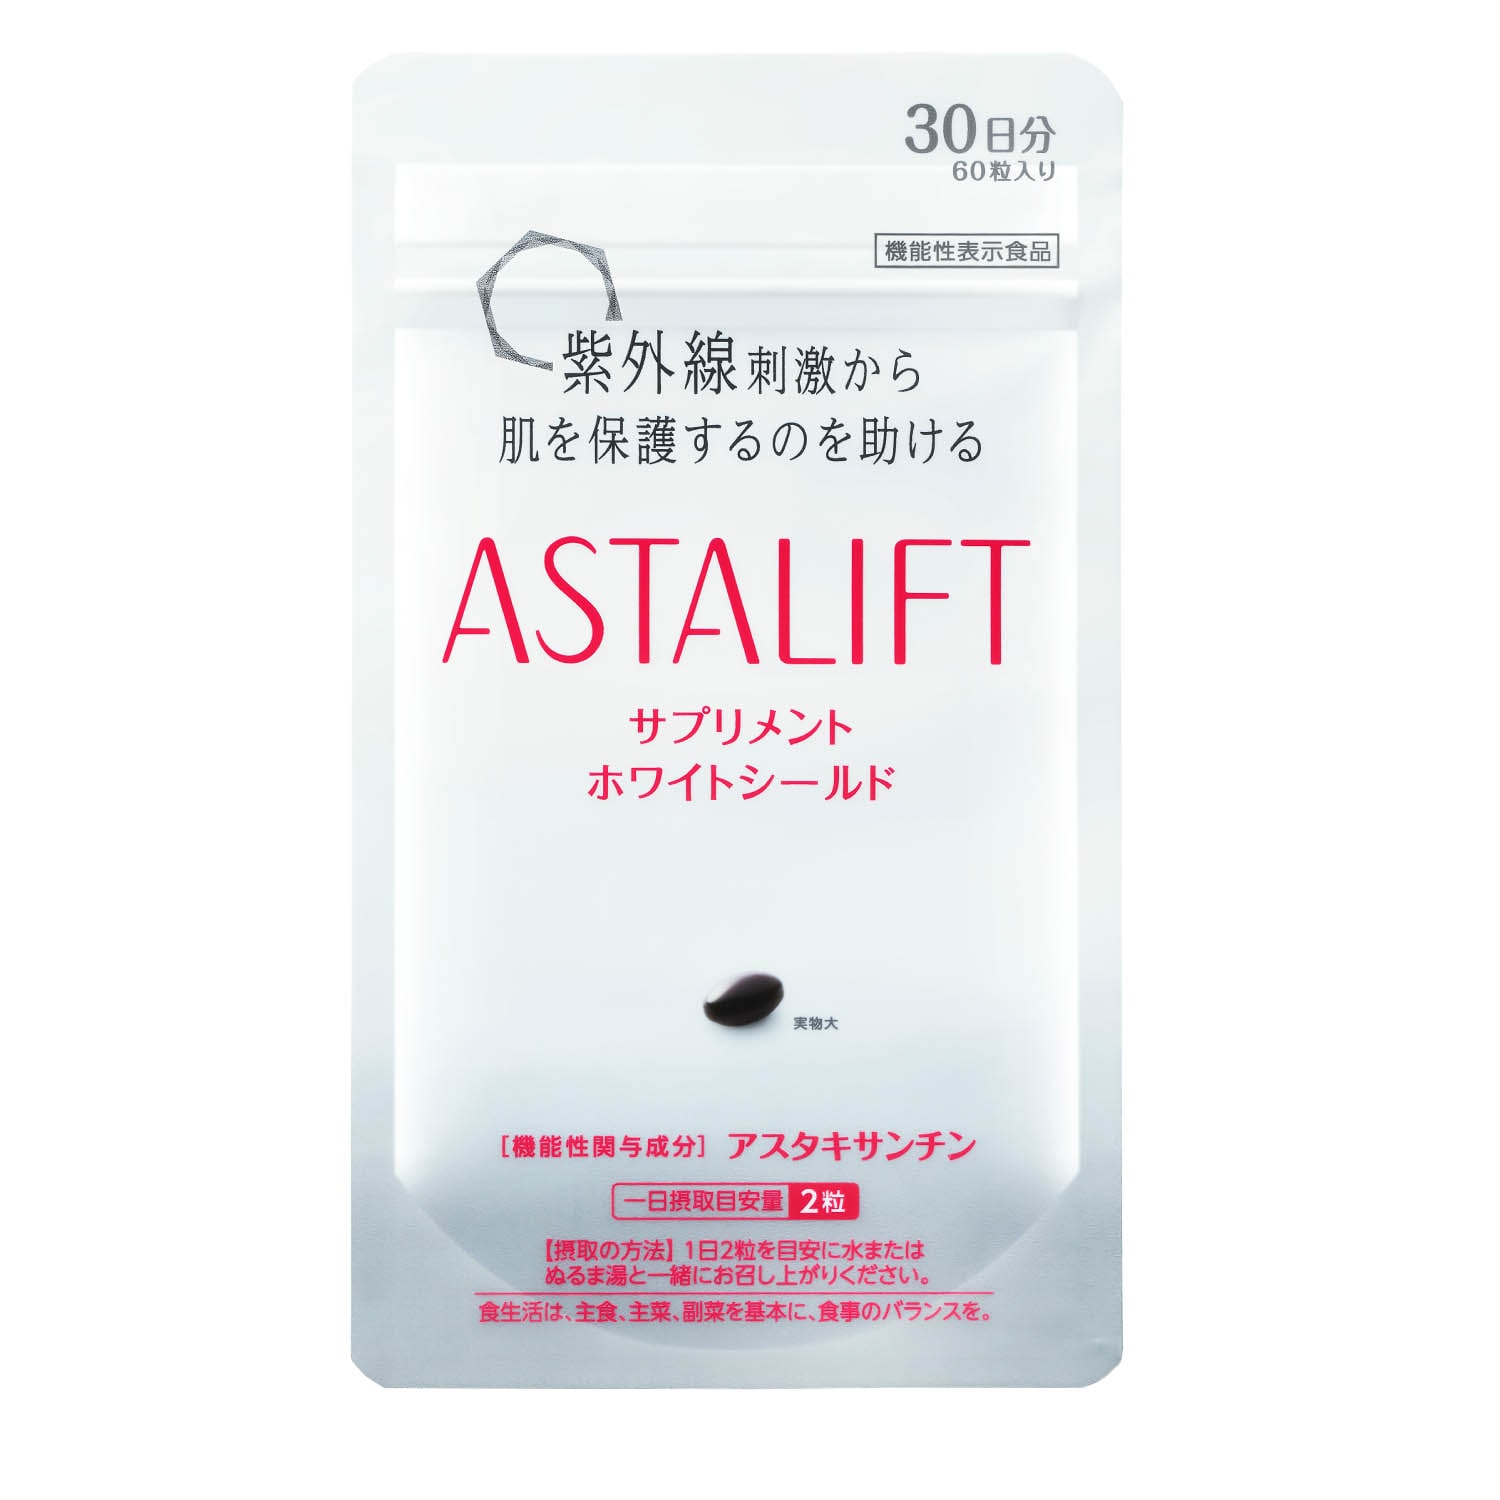 【アスタリフト/ASTALIFT】サプリメント ホワイトシールド(30日分)<機能性表示食品>